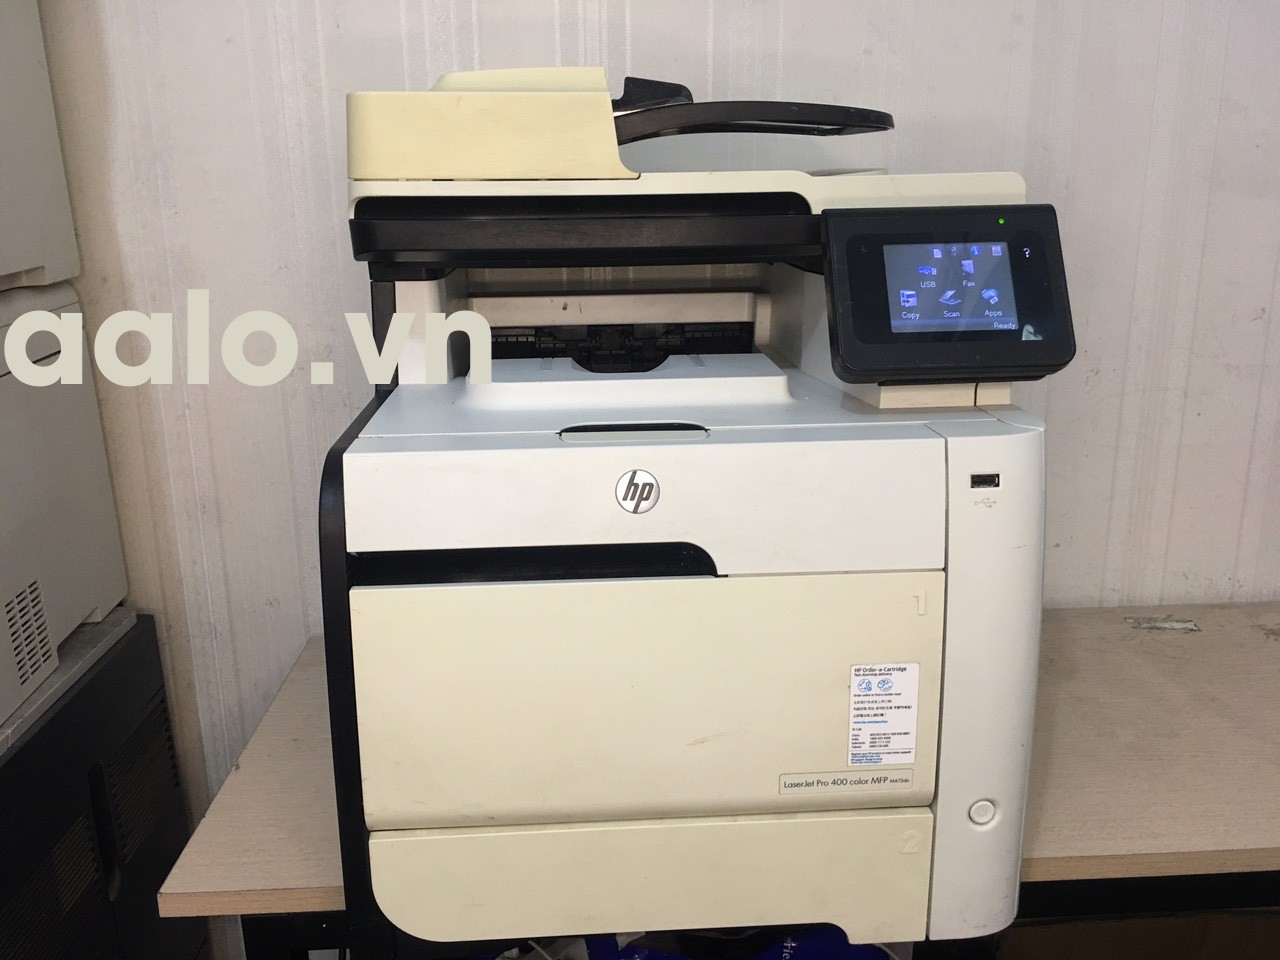 Máy in HP LaserJet Pro 400 color MFP M475DN - aalo.vn